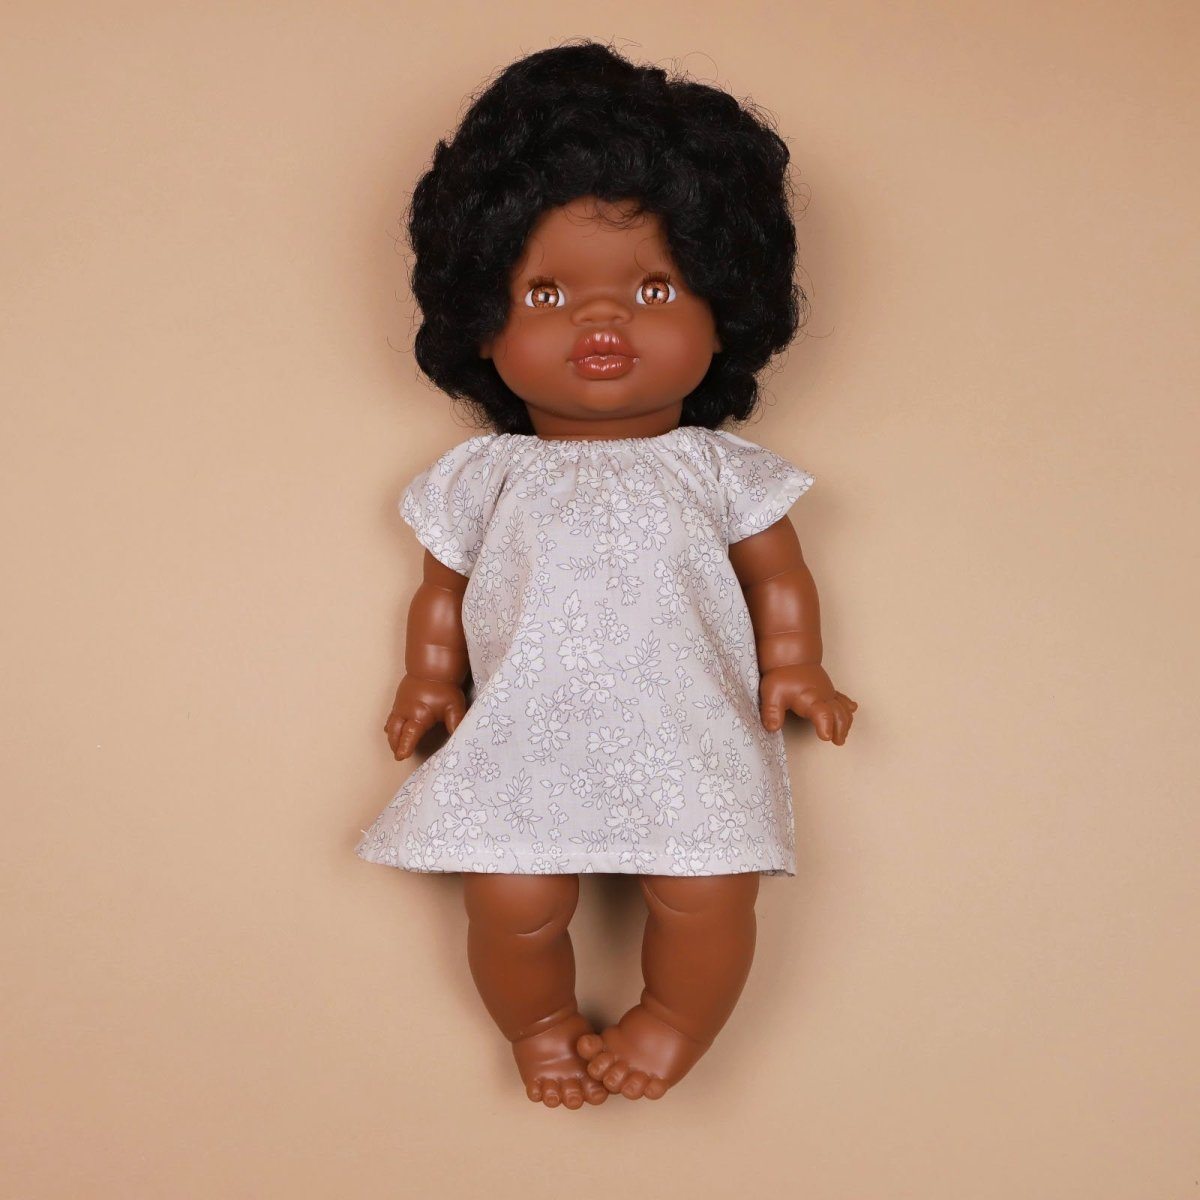 Doll | NIGHTDRESS IN LIBERTY PRINT MITSI GRAY FOR DOLLS | La Romi